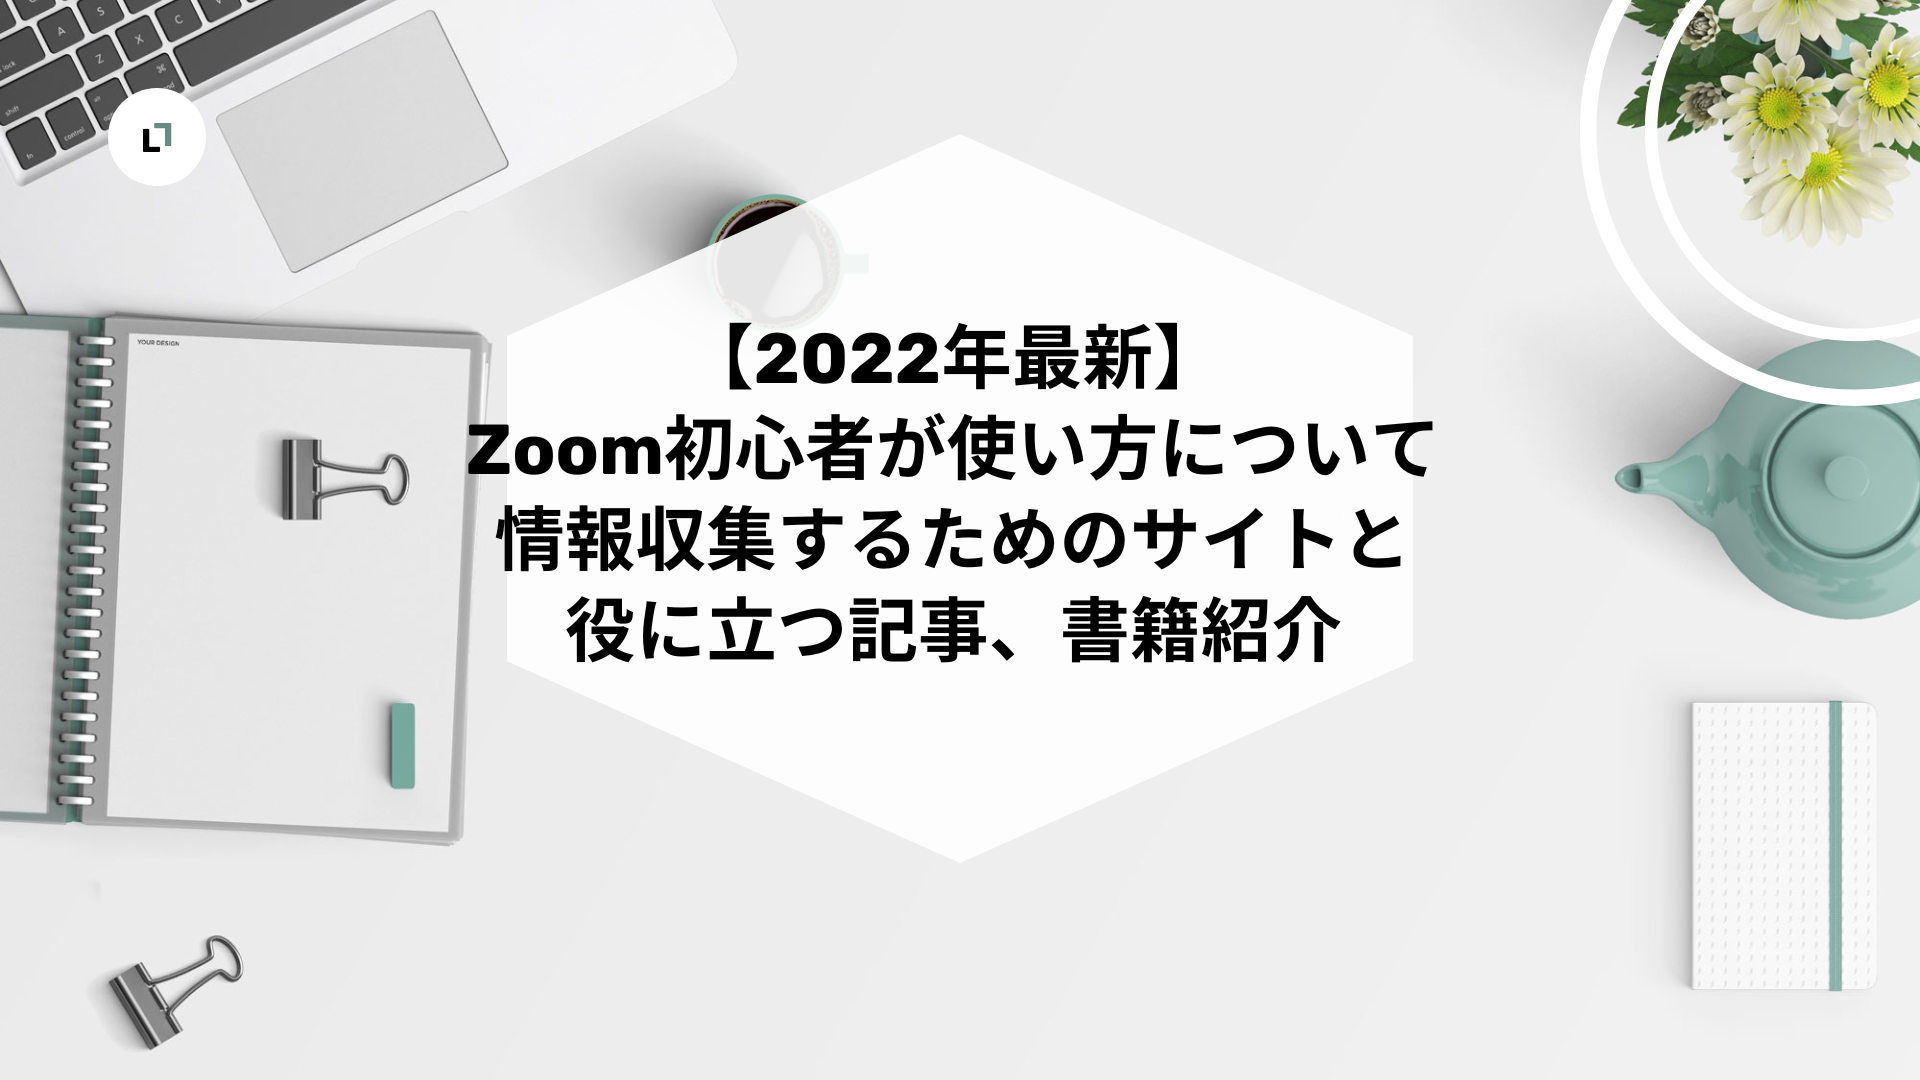 【2022年最新】Zoom初心者が使い方について情報収集するためのサイトと役に立つ記事、書籍紹介